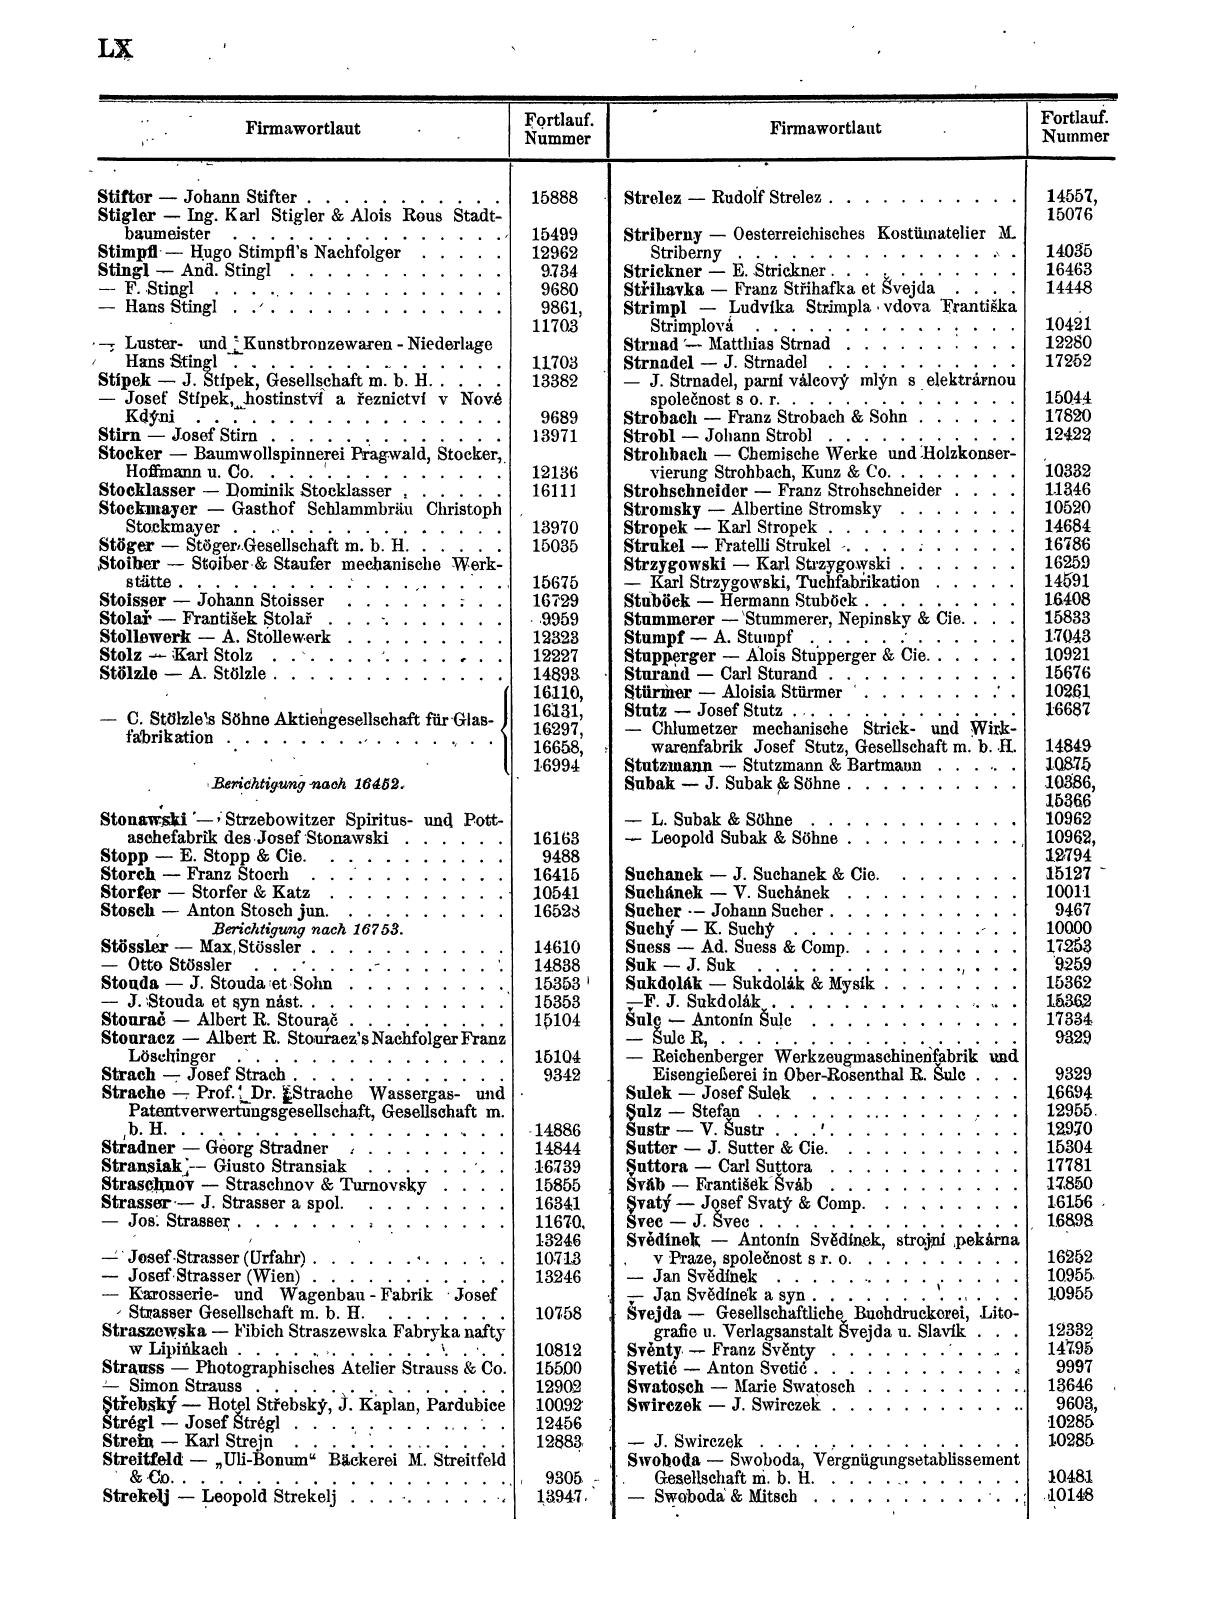 Zentralblatt für die Eintragungen in das Handelsregister 1913, Teil 2 - Seite 64